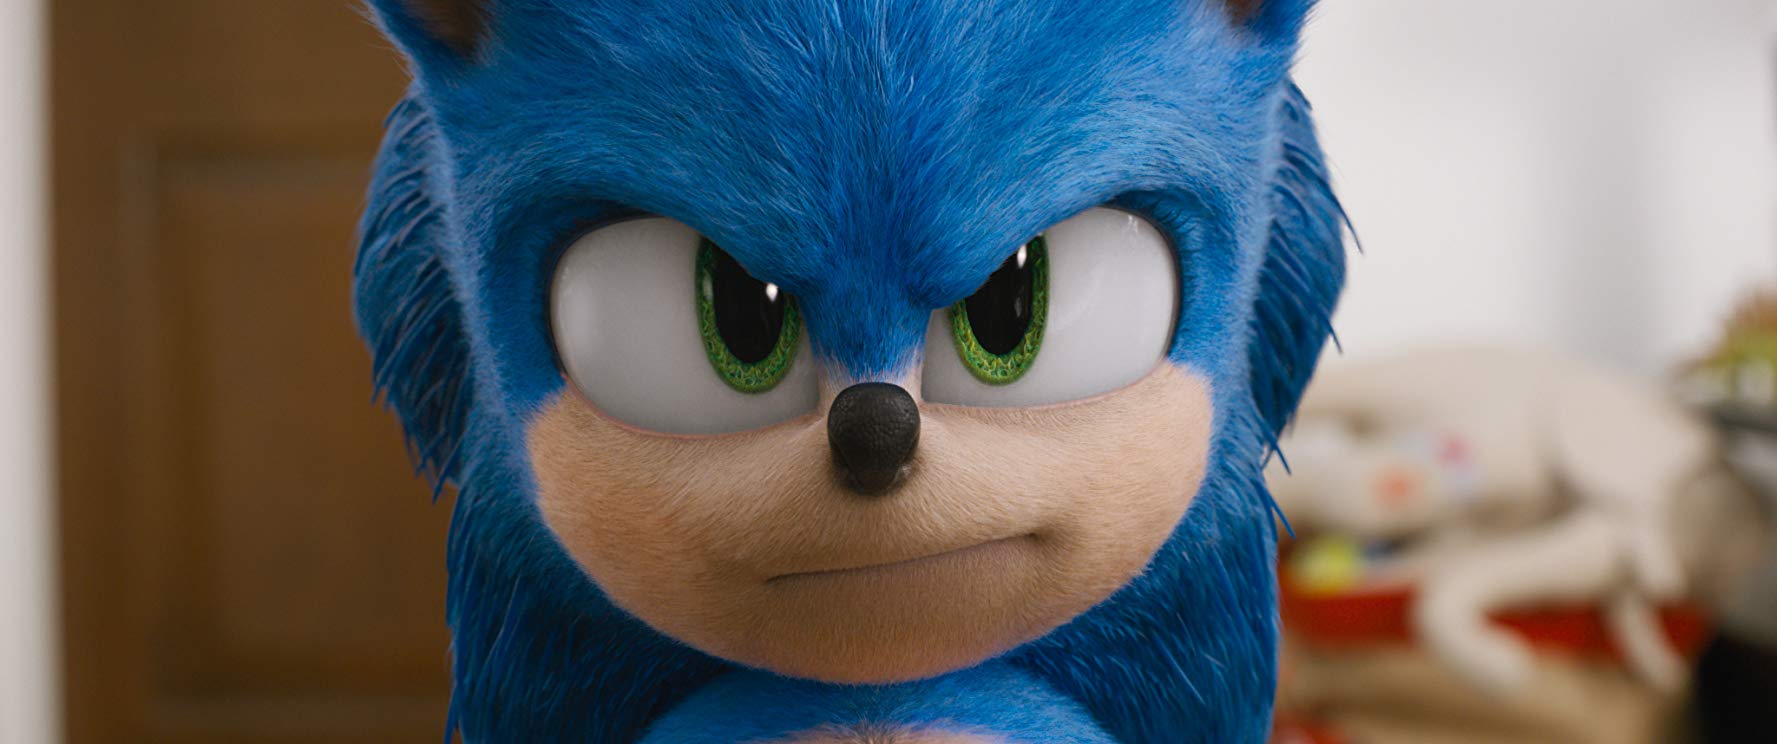 Sonic: O Filme - Bobo, genérico e divertido 6